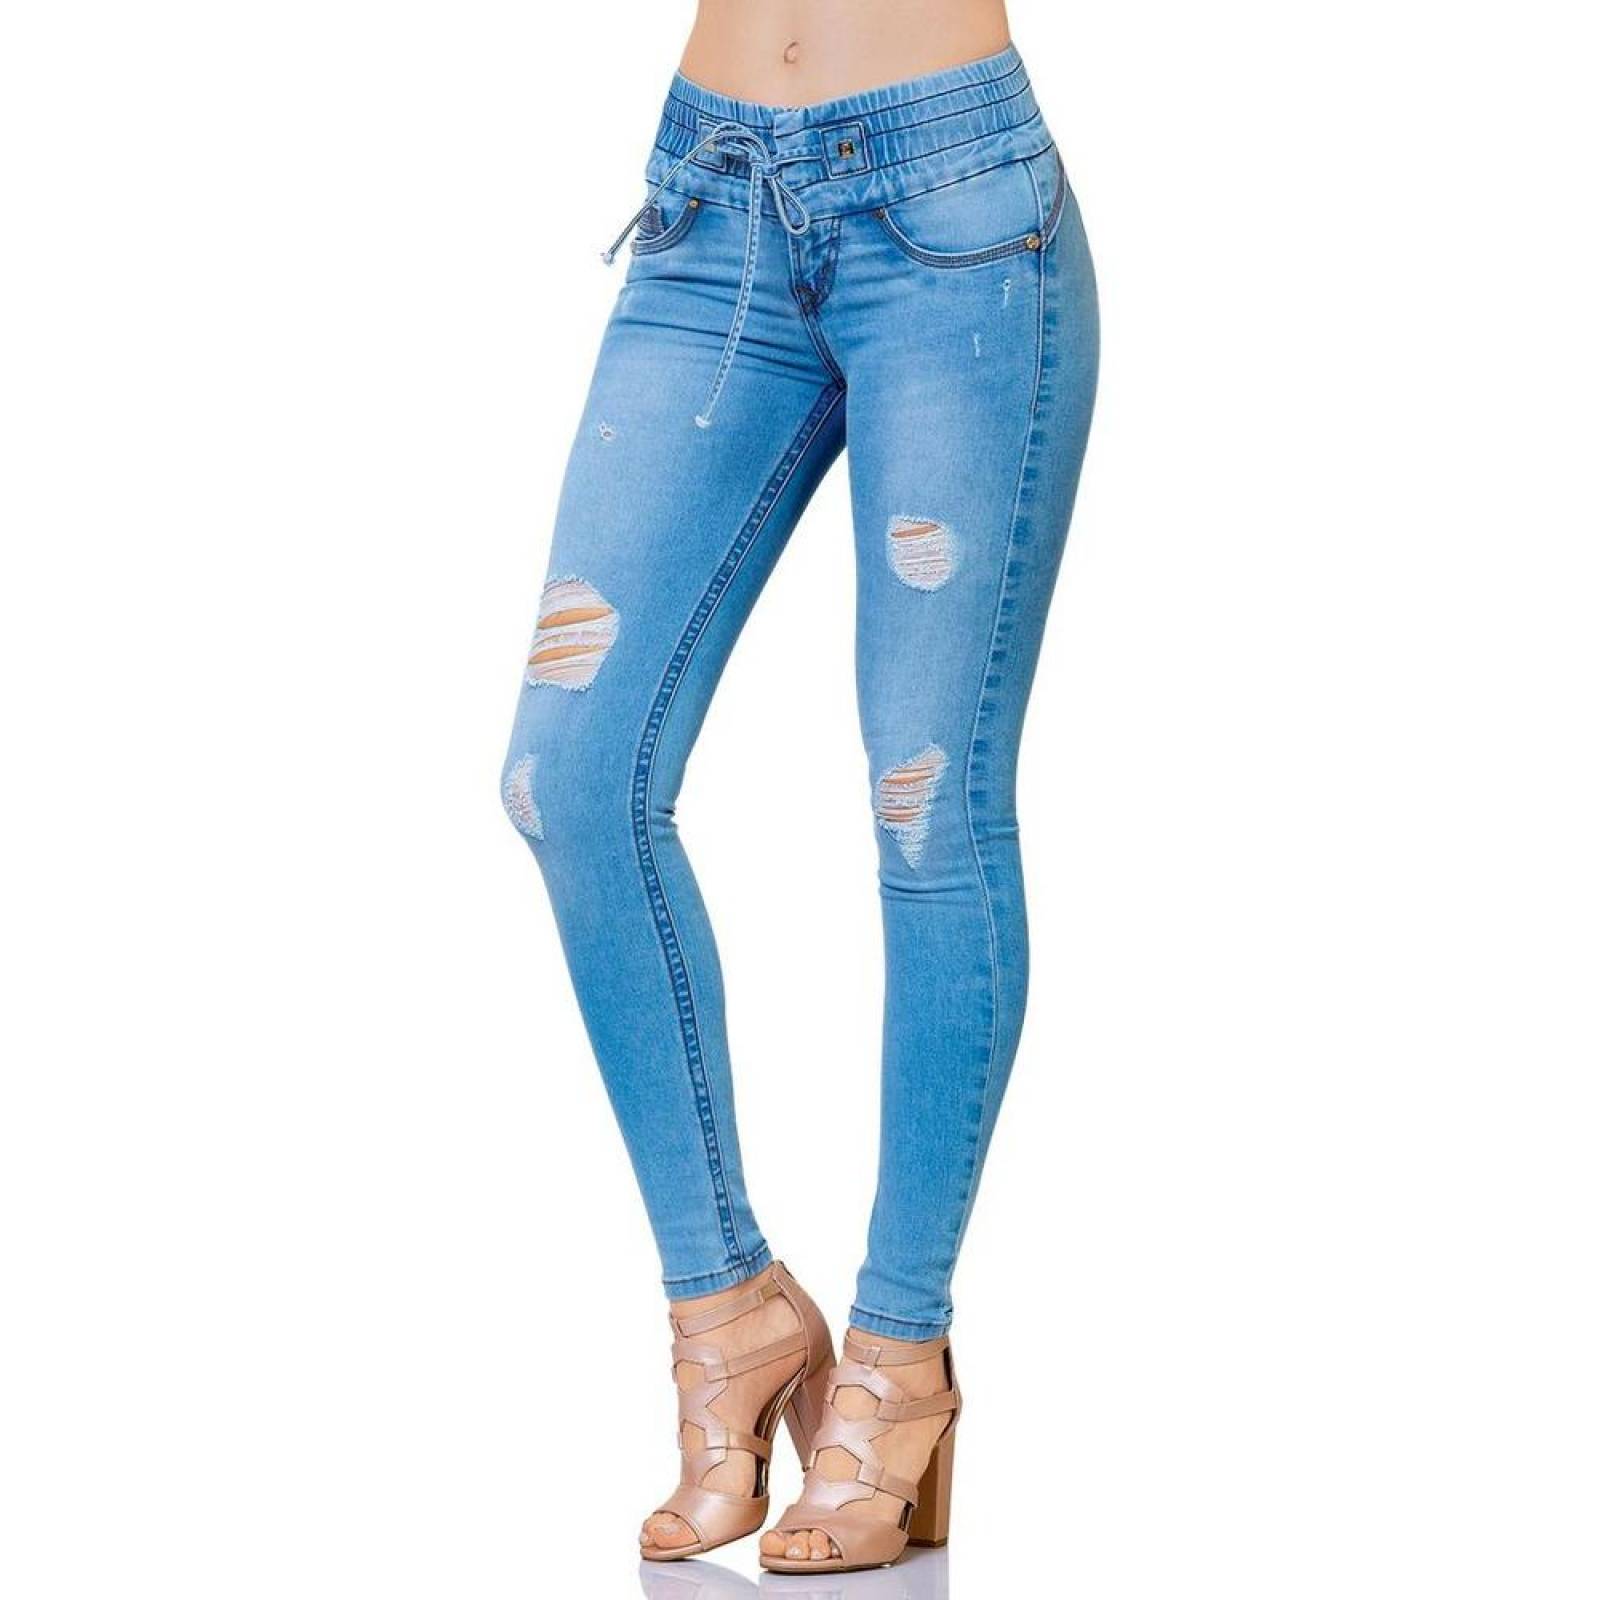 Jeans Moda Mujer Salvaje Tentación Bleach 71803110 Mezclilla Stretch 